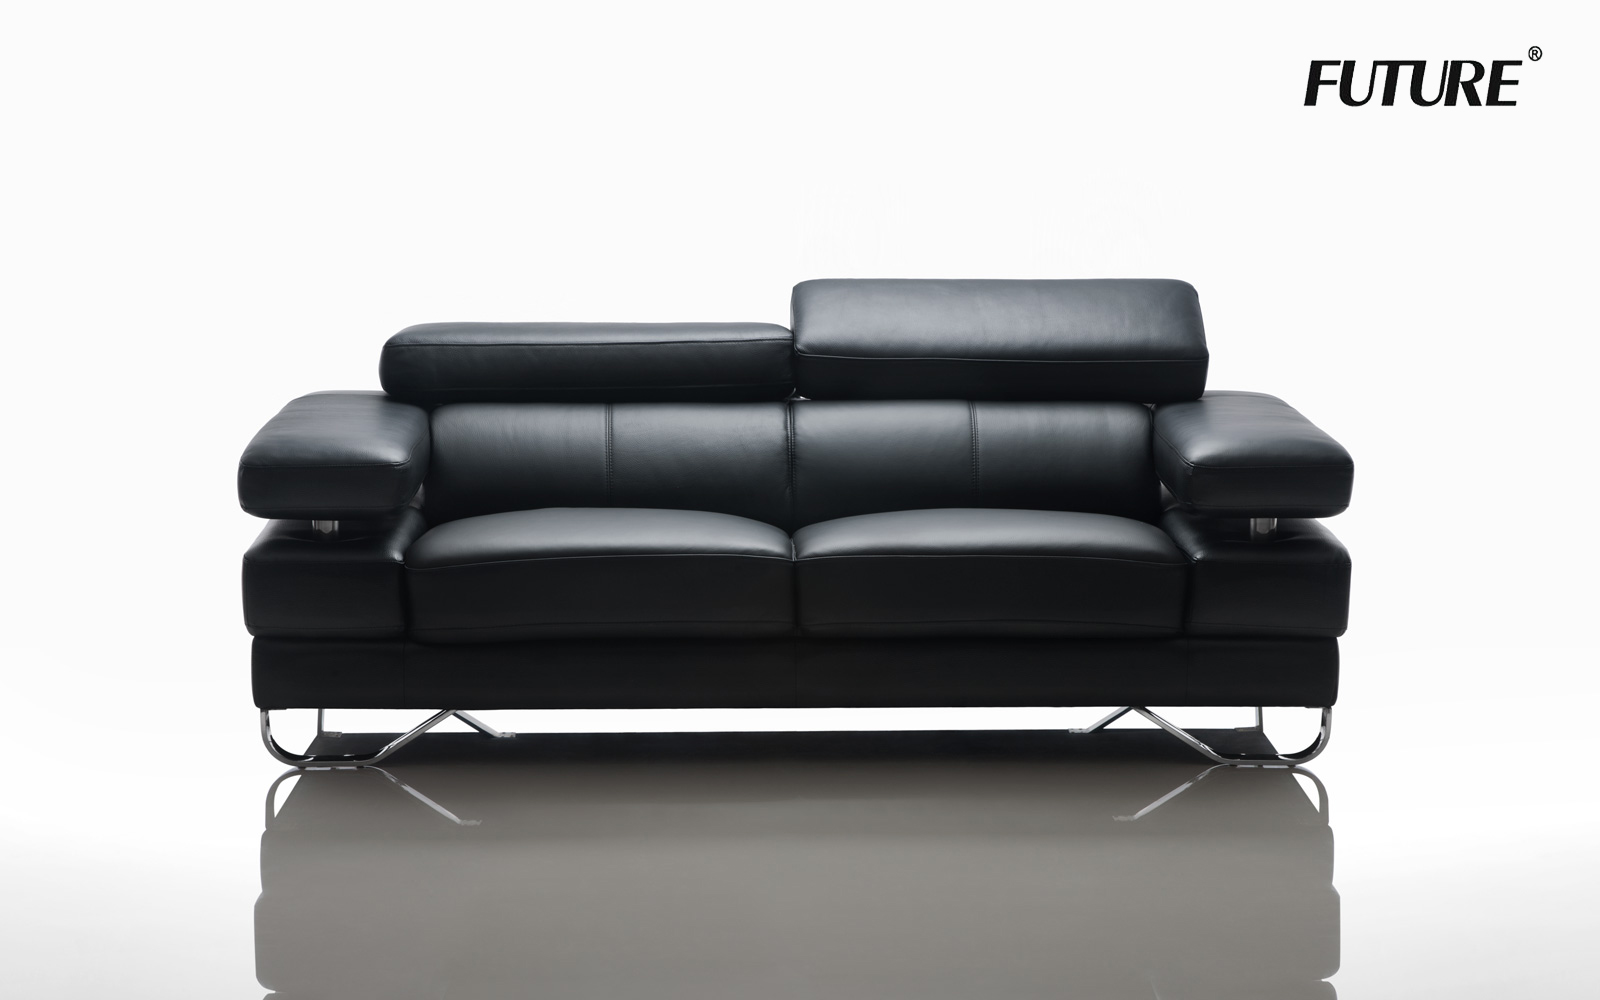 Kinh nghiệm chọn kích thước sofa văng chuẩn - Ảnh 3